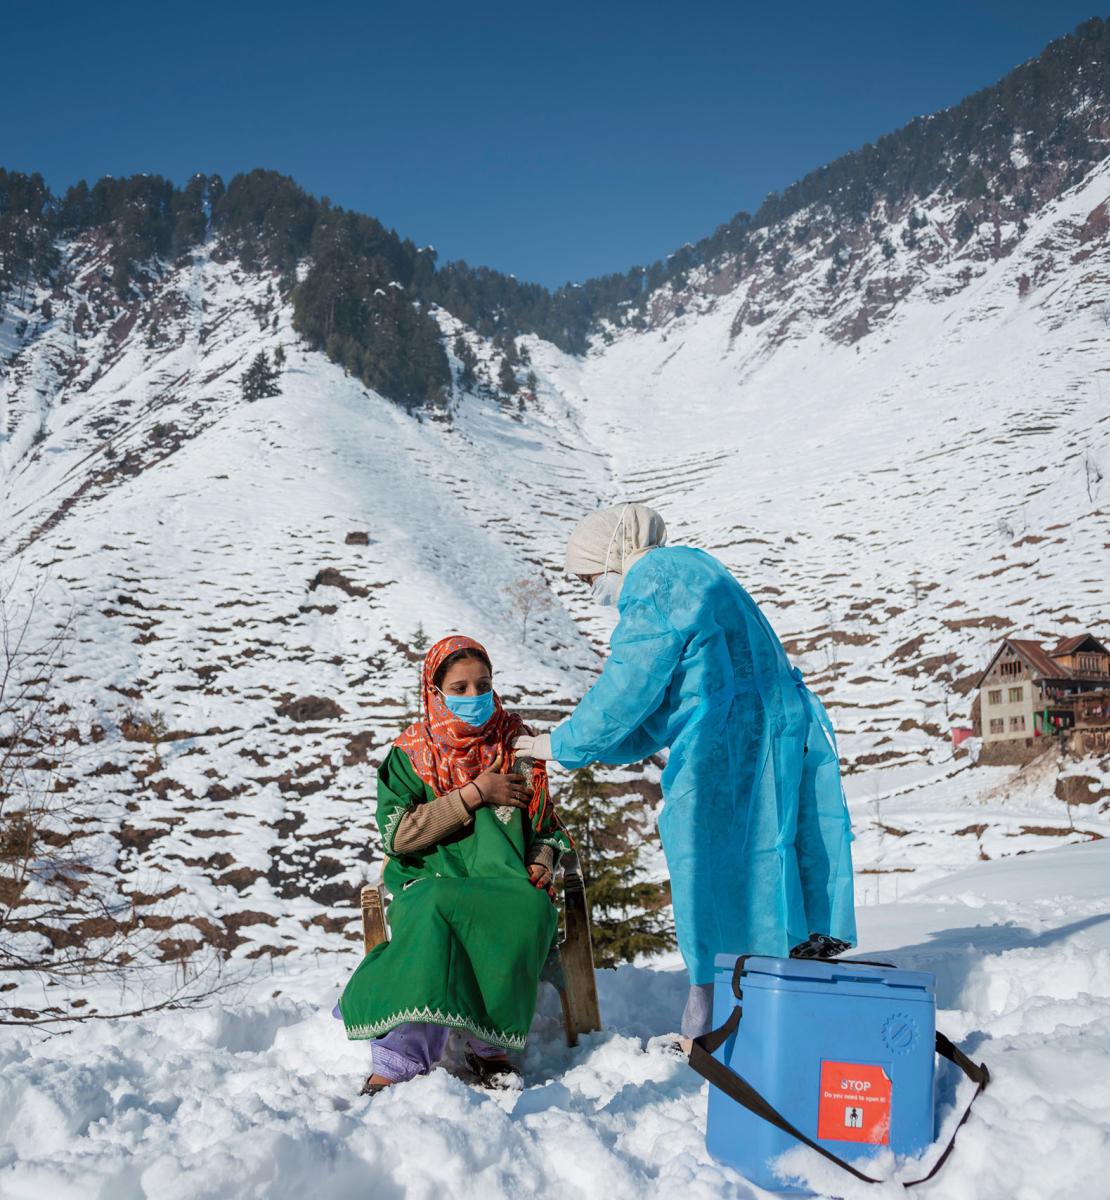 Una mujer se vacuna contra la COVID-19 en la cima de una montaña nevada.